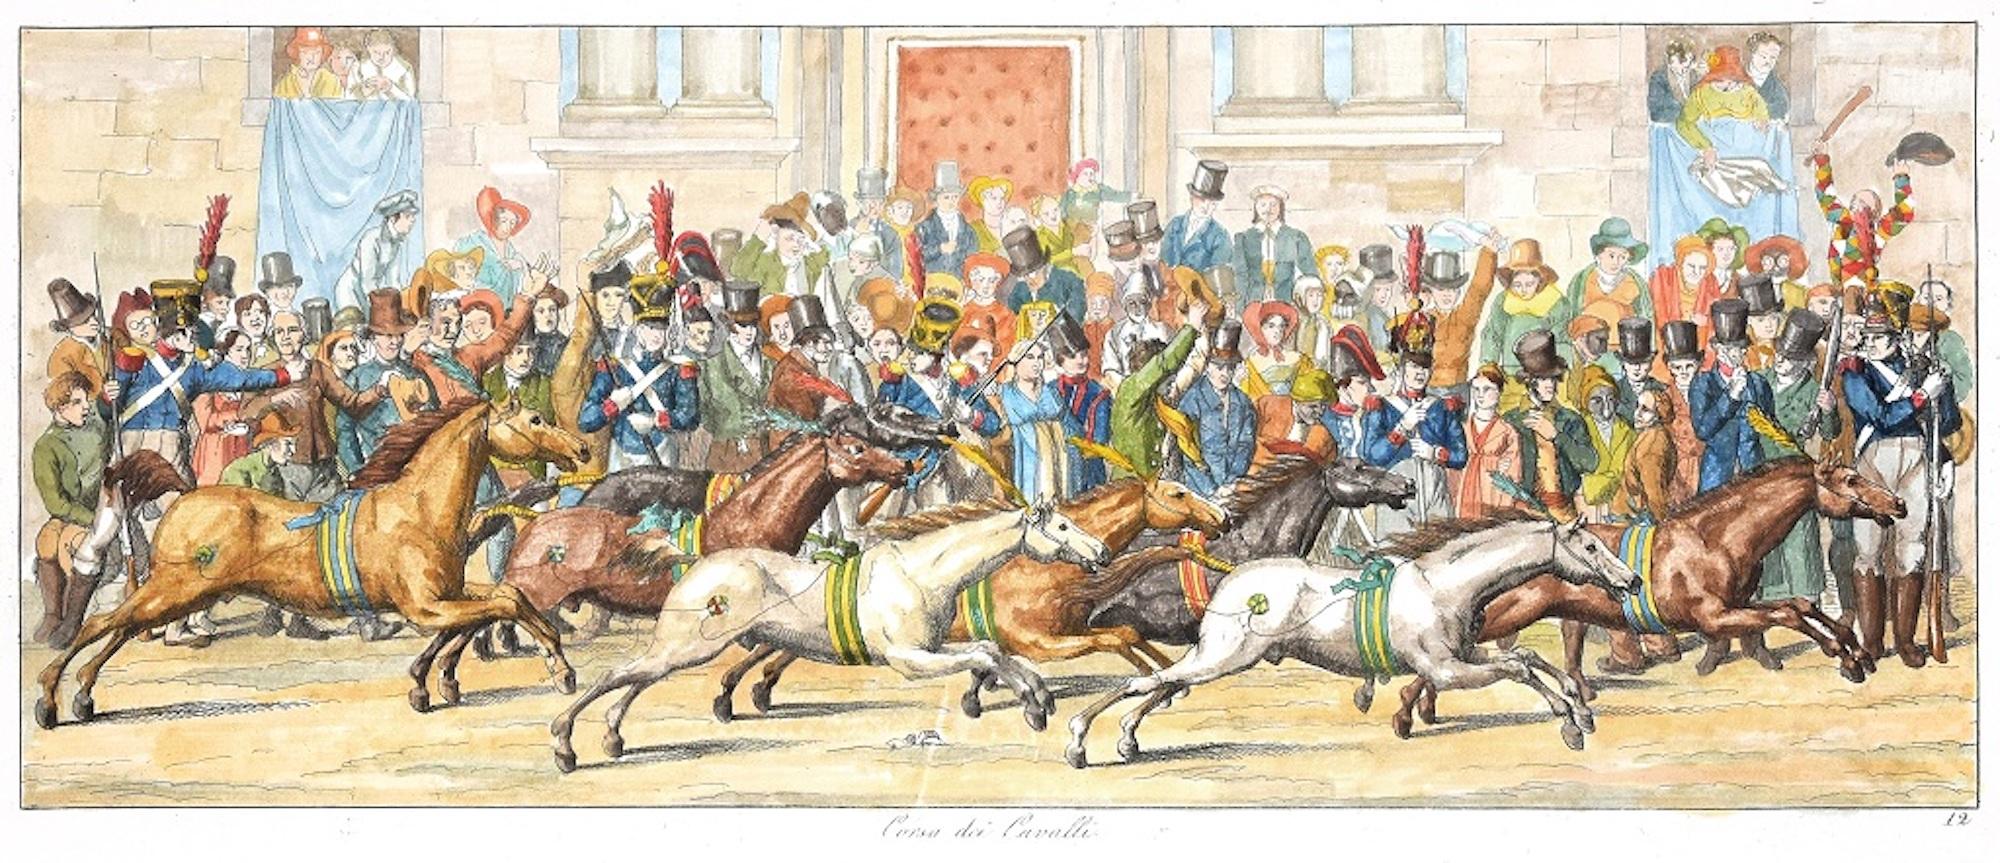 Horse Race - Original Etching by C. G. Hyalmar Morner - 1820 - Print by Carl Gustaf Hyalmar Morner